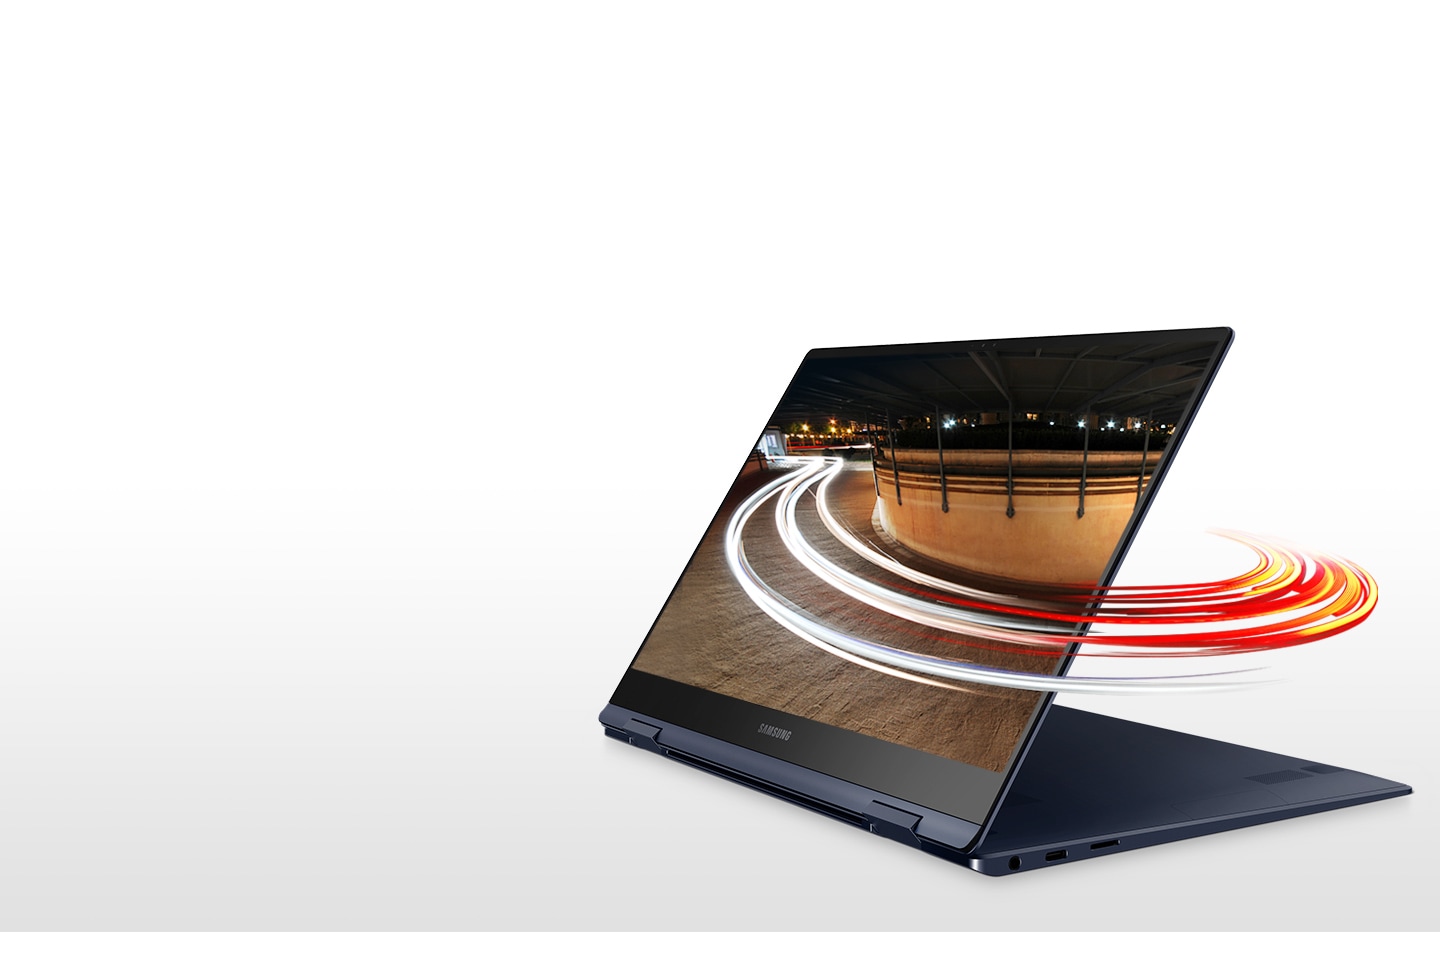 Der Laptop, der wie ein Tablet in einem Folio-Ständer aufgestellt ist, hat leichte Wirbel um den Bildschirm, die auf die schnelle Konnektivität hinweisen, die das Galaxy Book Pro 360 ermöglicht.